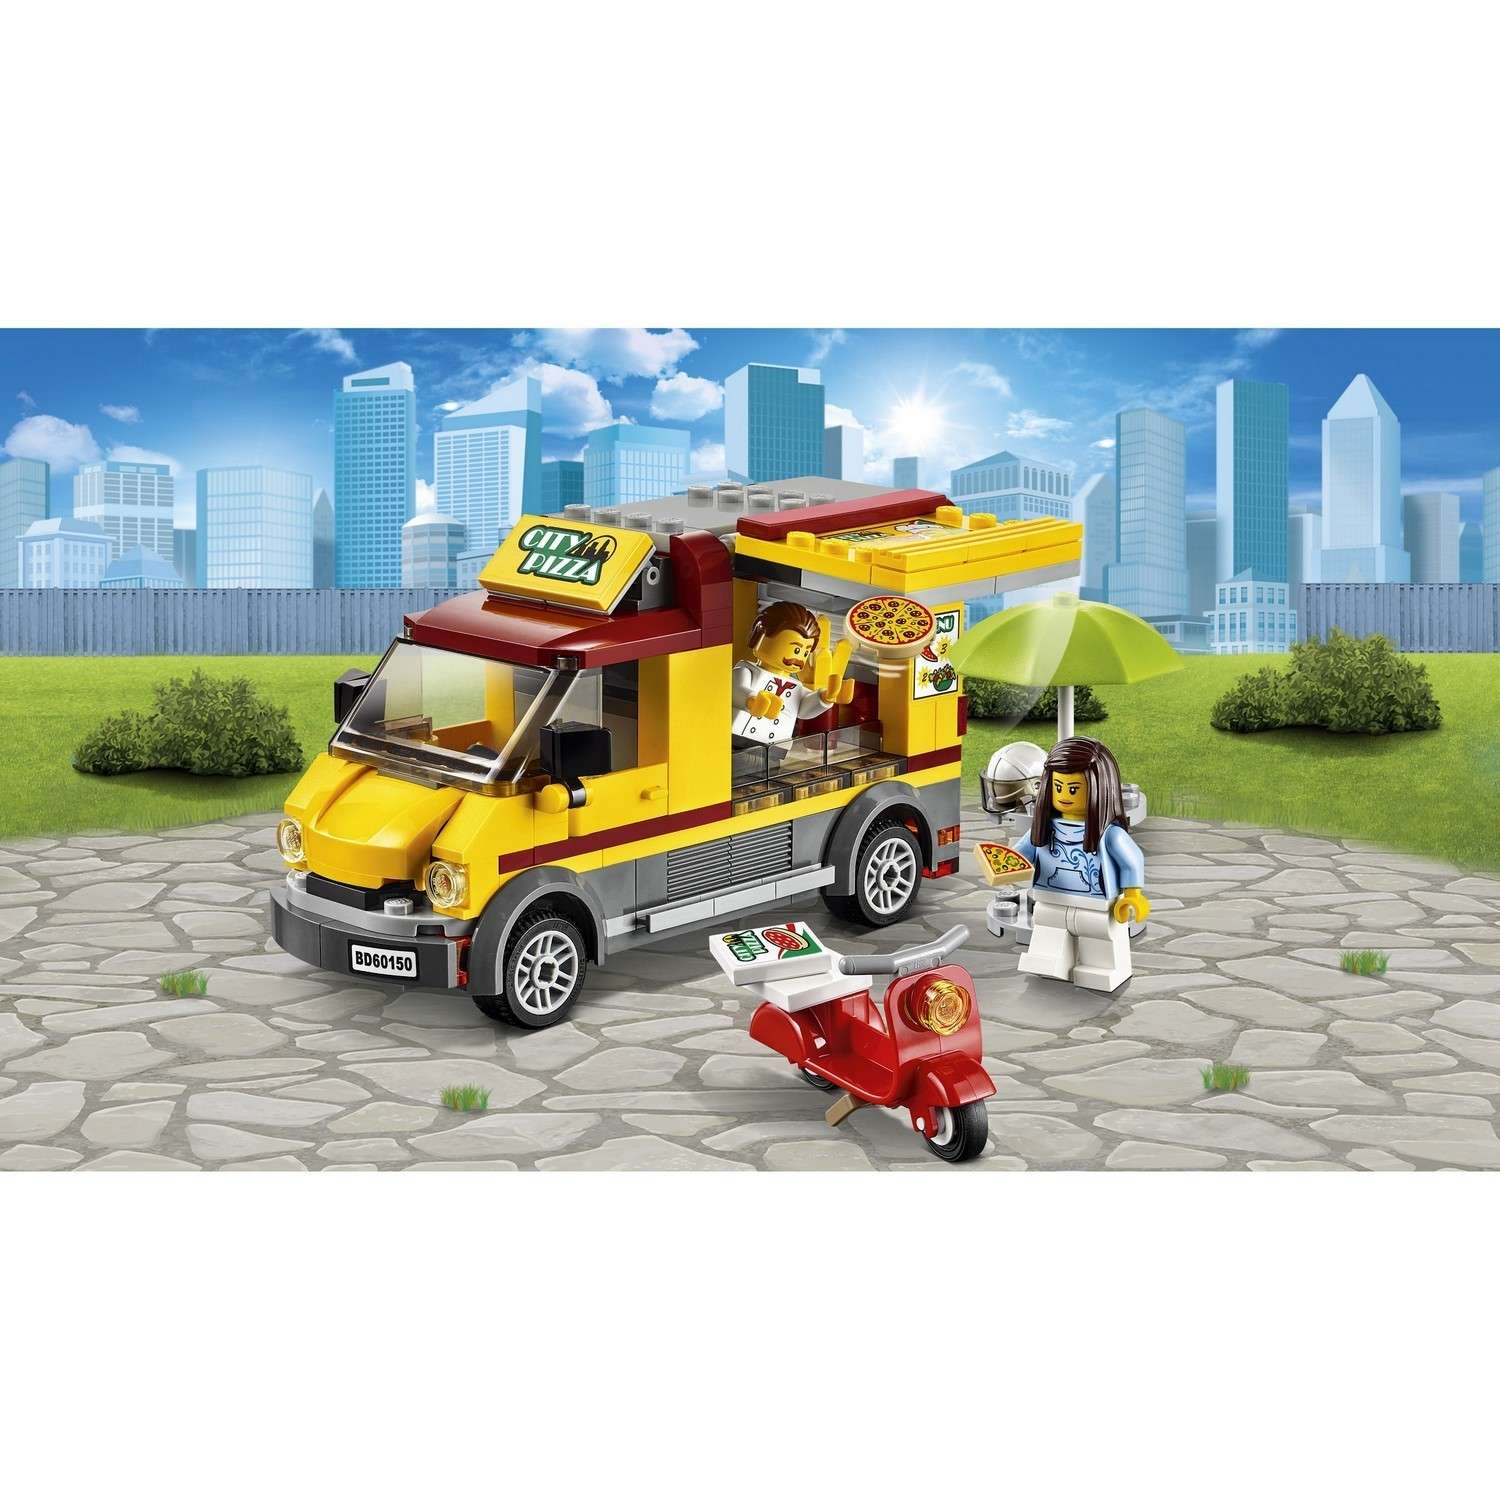 Конструктор LEGO City Great Vehicles Фургон-пиццерия (60150) - фото 4